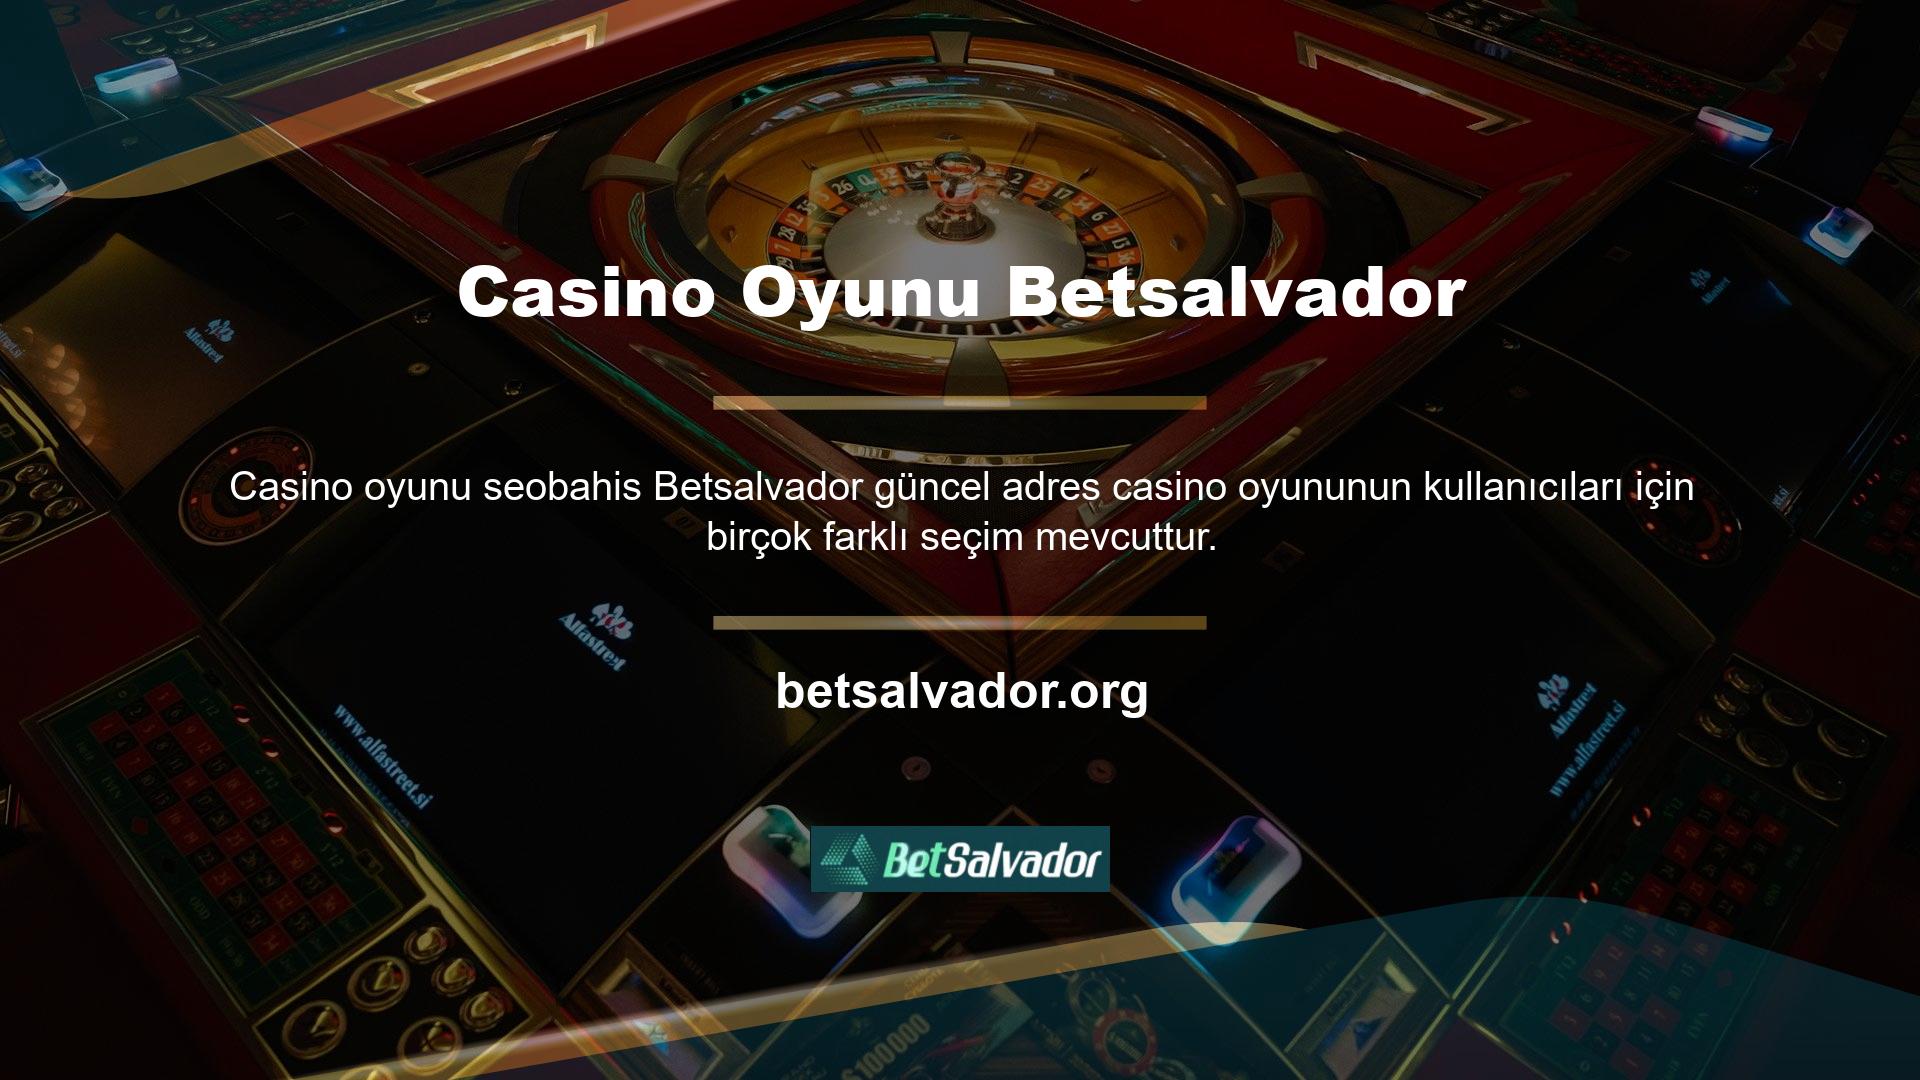 Ödeme aşamasında Betsalvador casino eğlenceli ve kazançlı bonuslar sunmaktadır